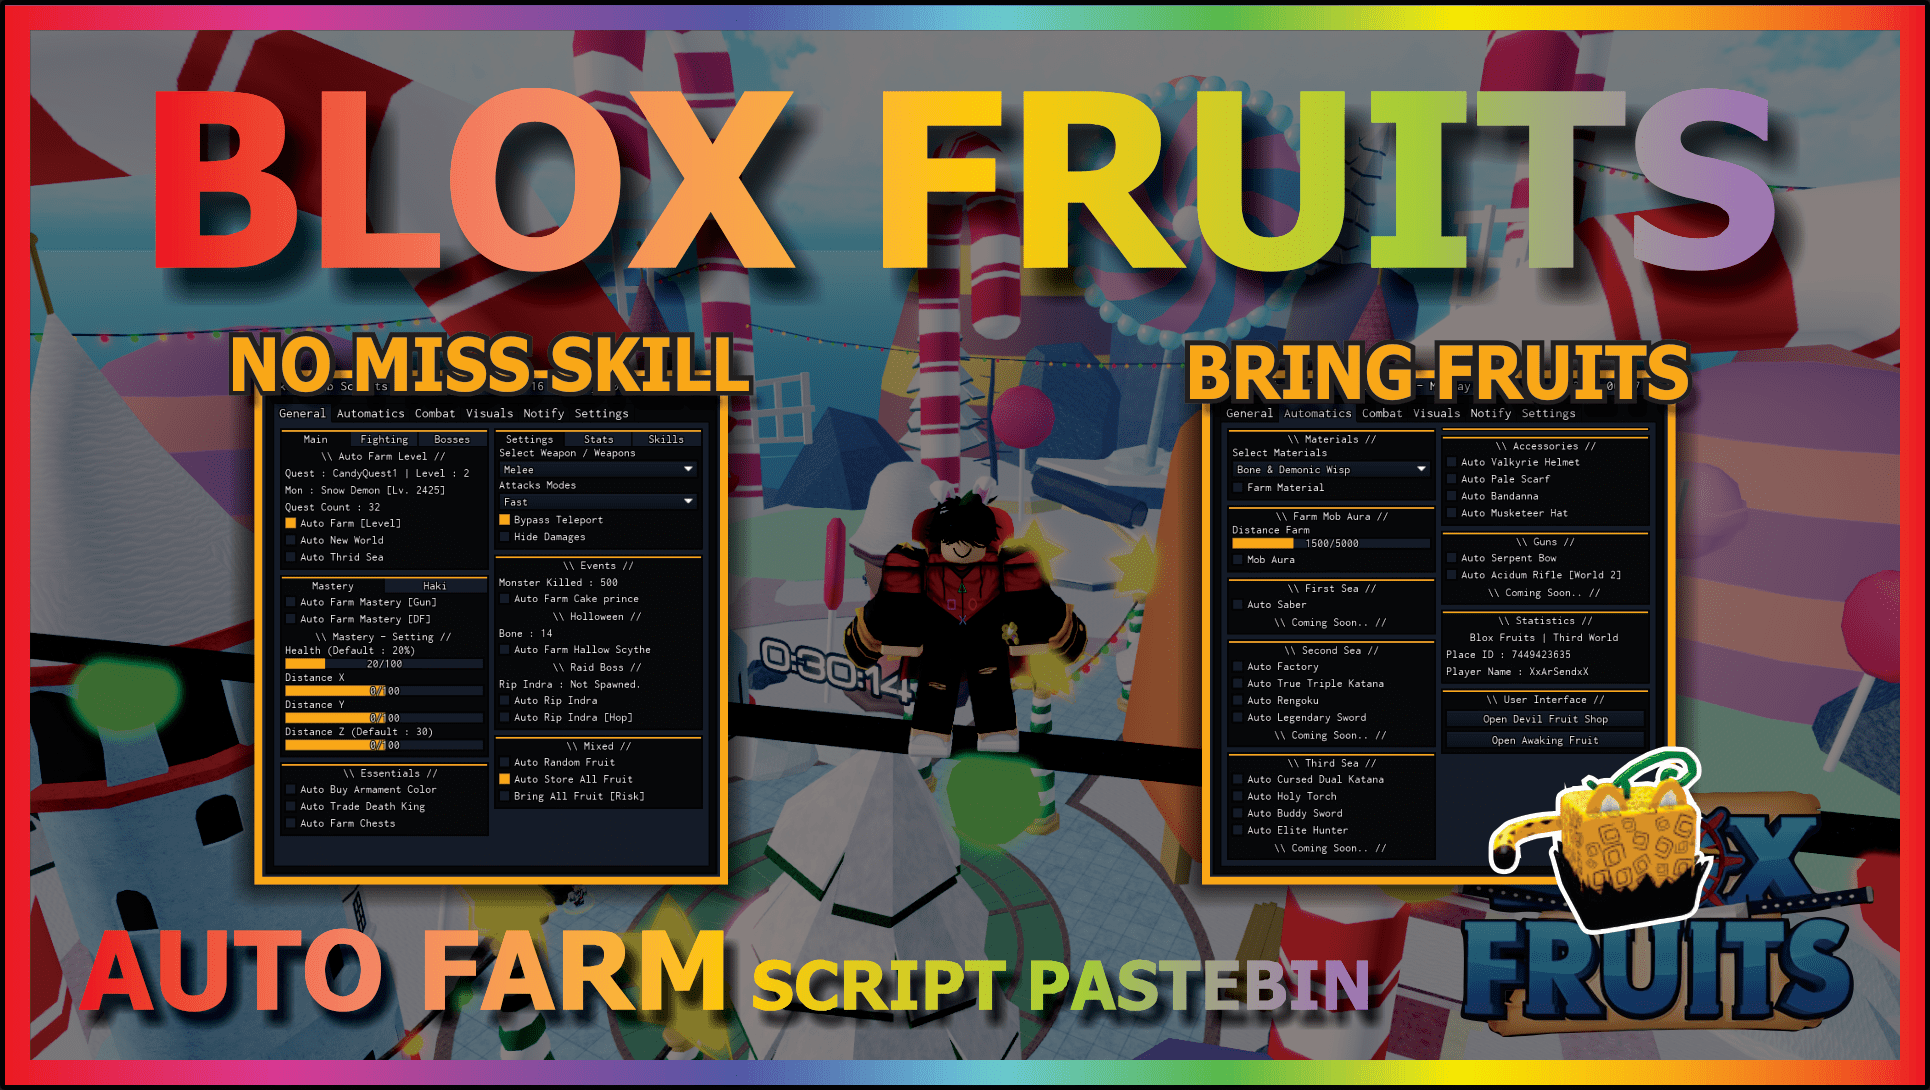 Hack Para Jogos Do Roblox(Blox Fruits E +) - DFG